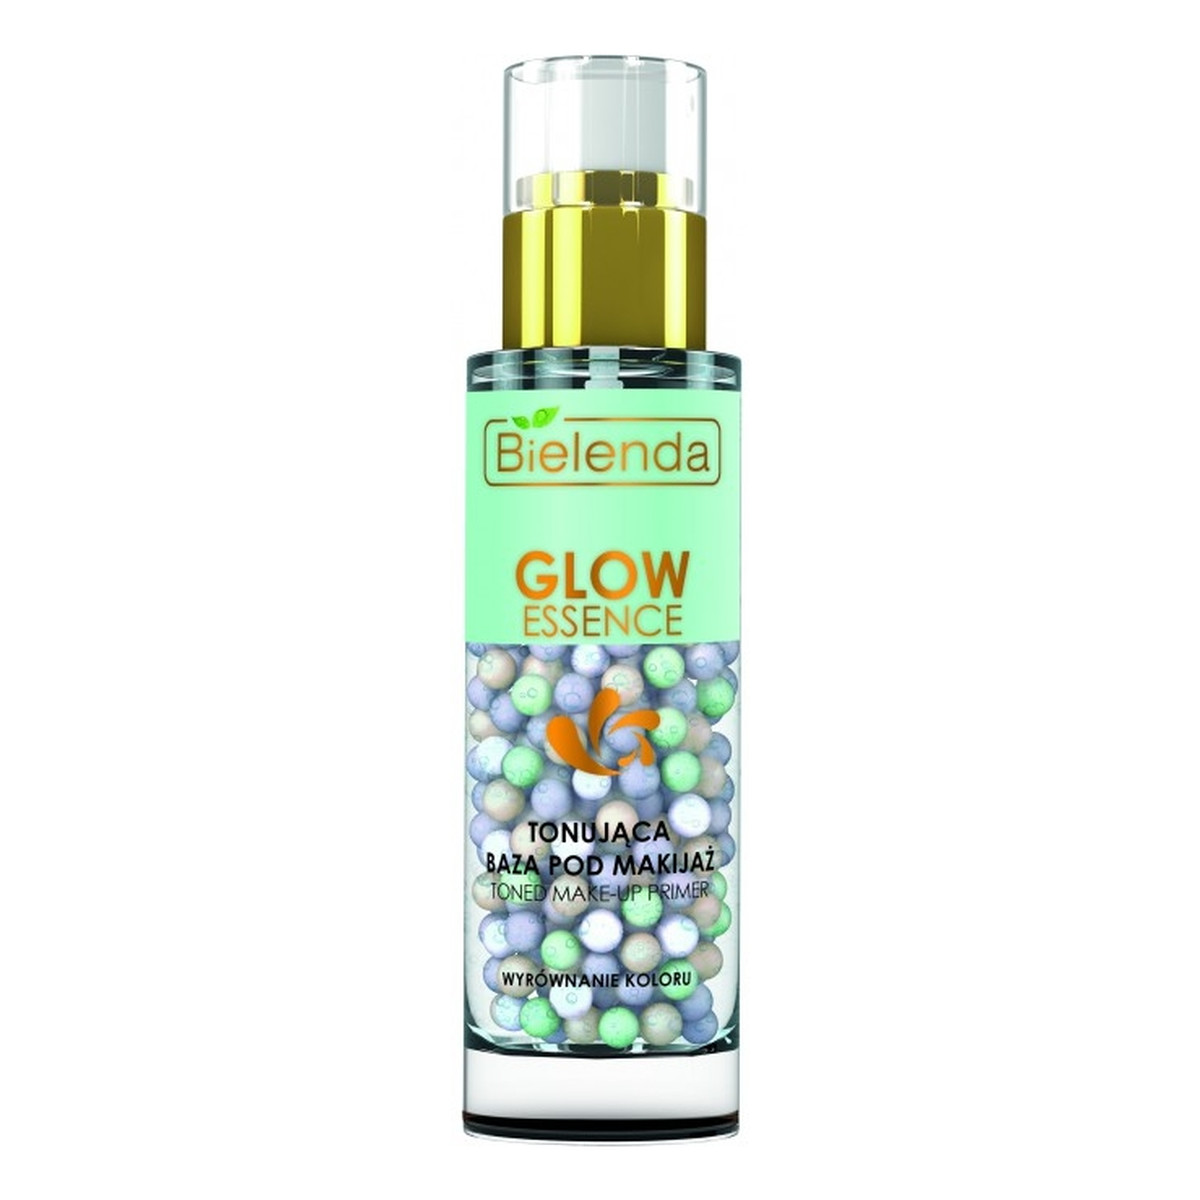 Bielenda Glow Essence Tonująca baza pod makijaż 30g